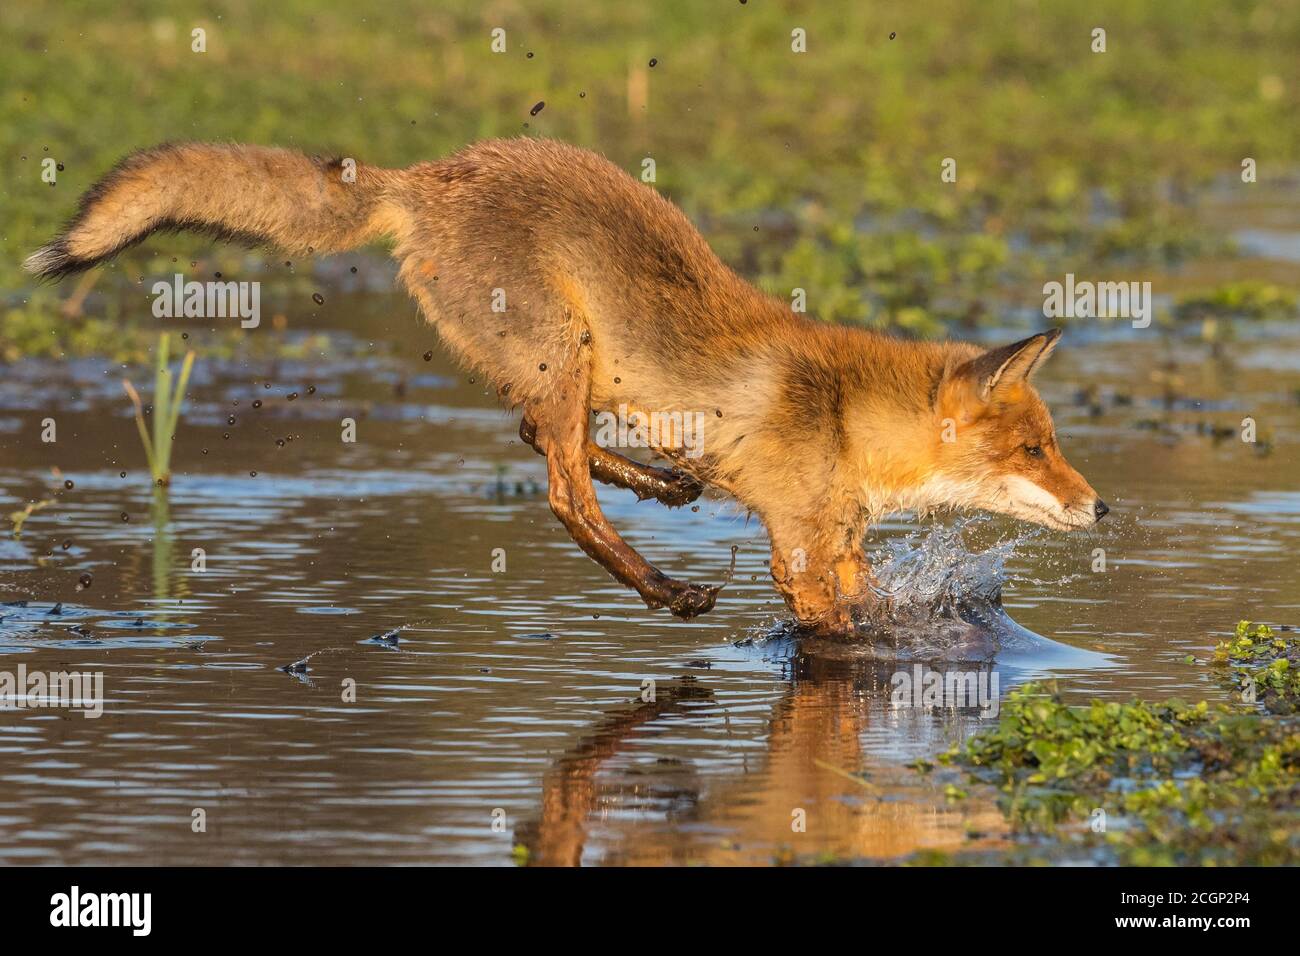 La volpe rossa (Vulpes vulpes) salta su un corpo d'acqua, salto, azione, Paesi Bassi Foto Stock